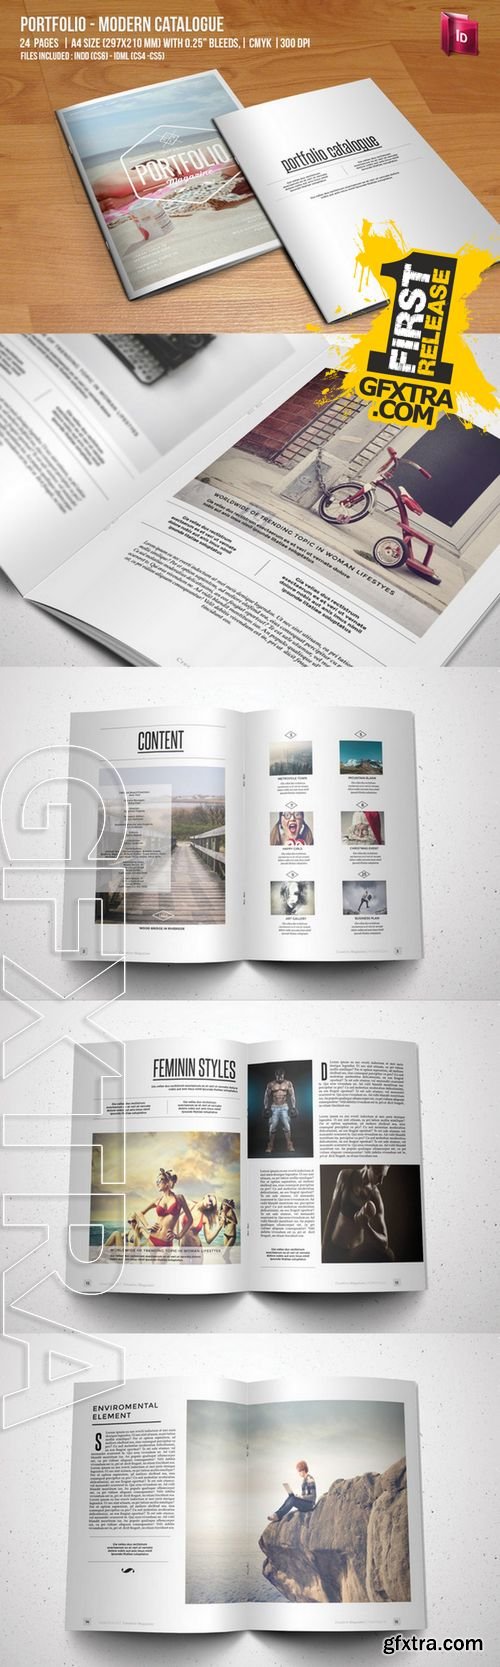 Portfolio - Modern Catalogue - CM 118215